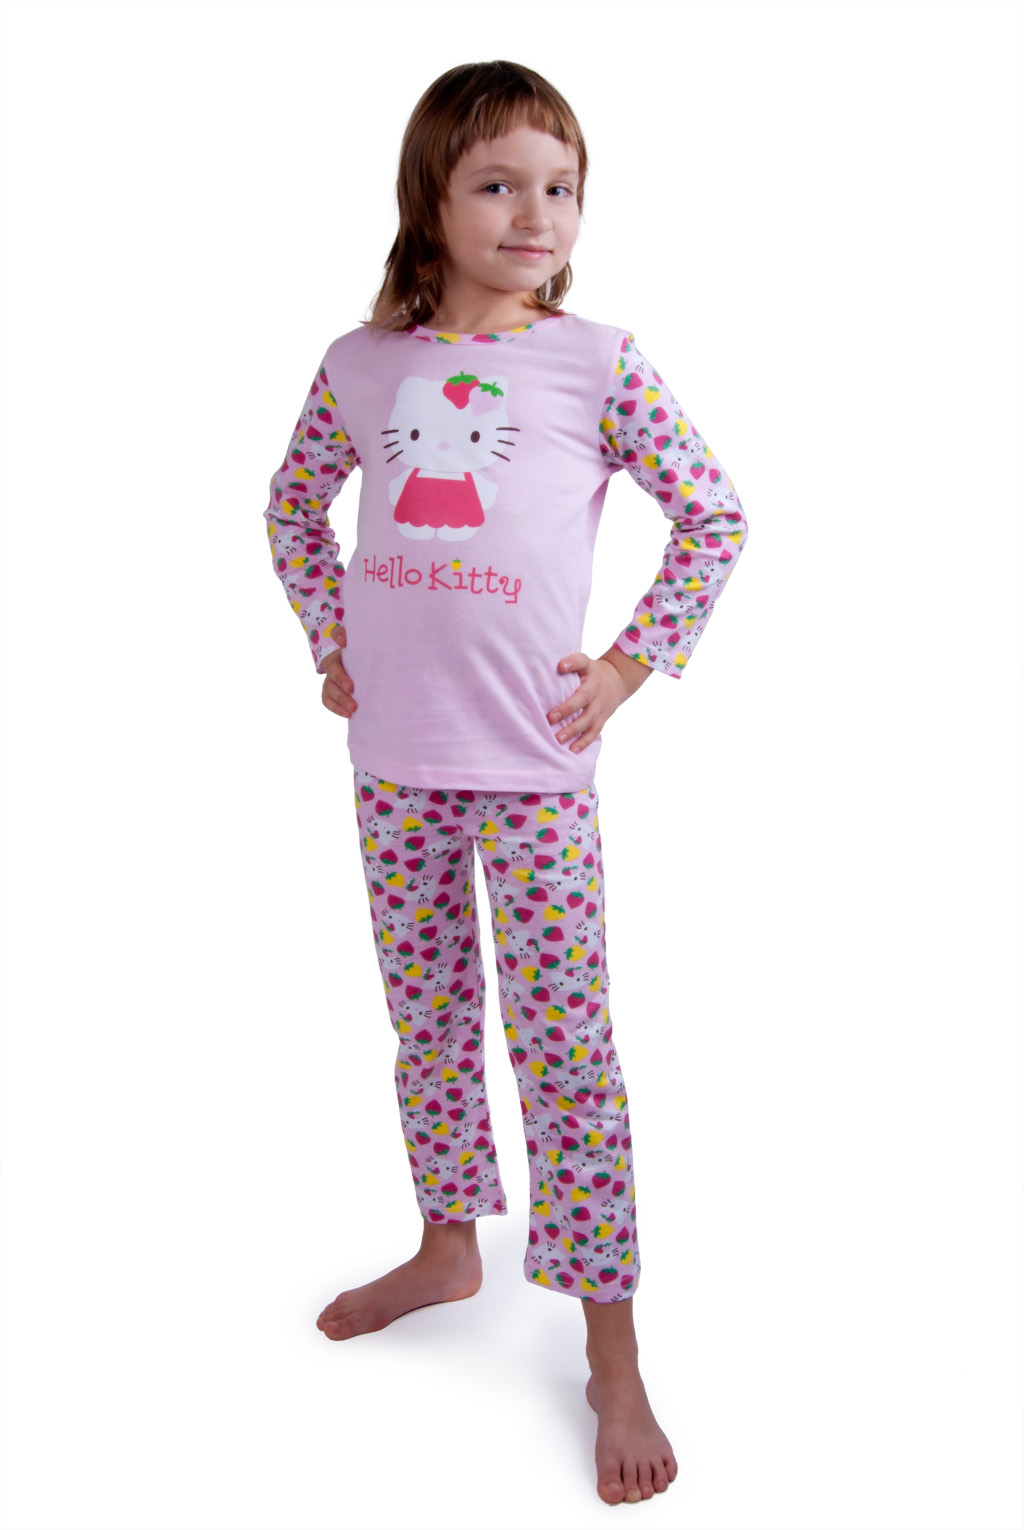 Пижама hello. Пижамные штаны hello Kitty. Детские пижамы Хелло Китти. Хелло Китти пижама со штанами. Пижама с Хеллоу Китти детская.